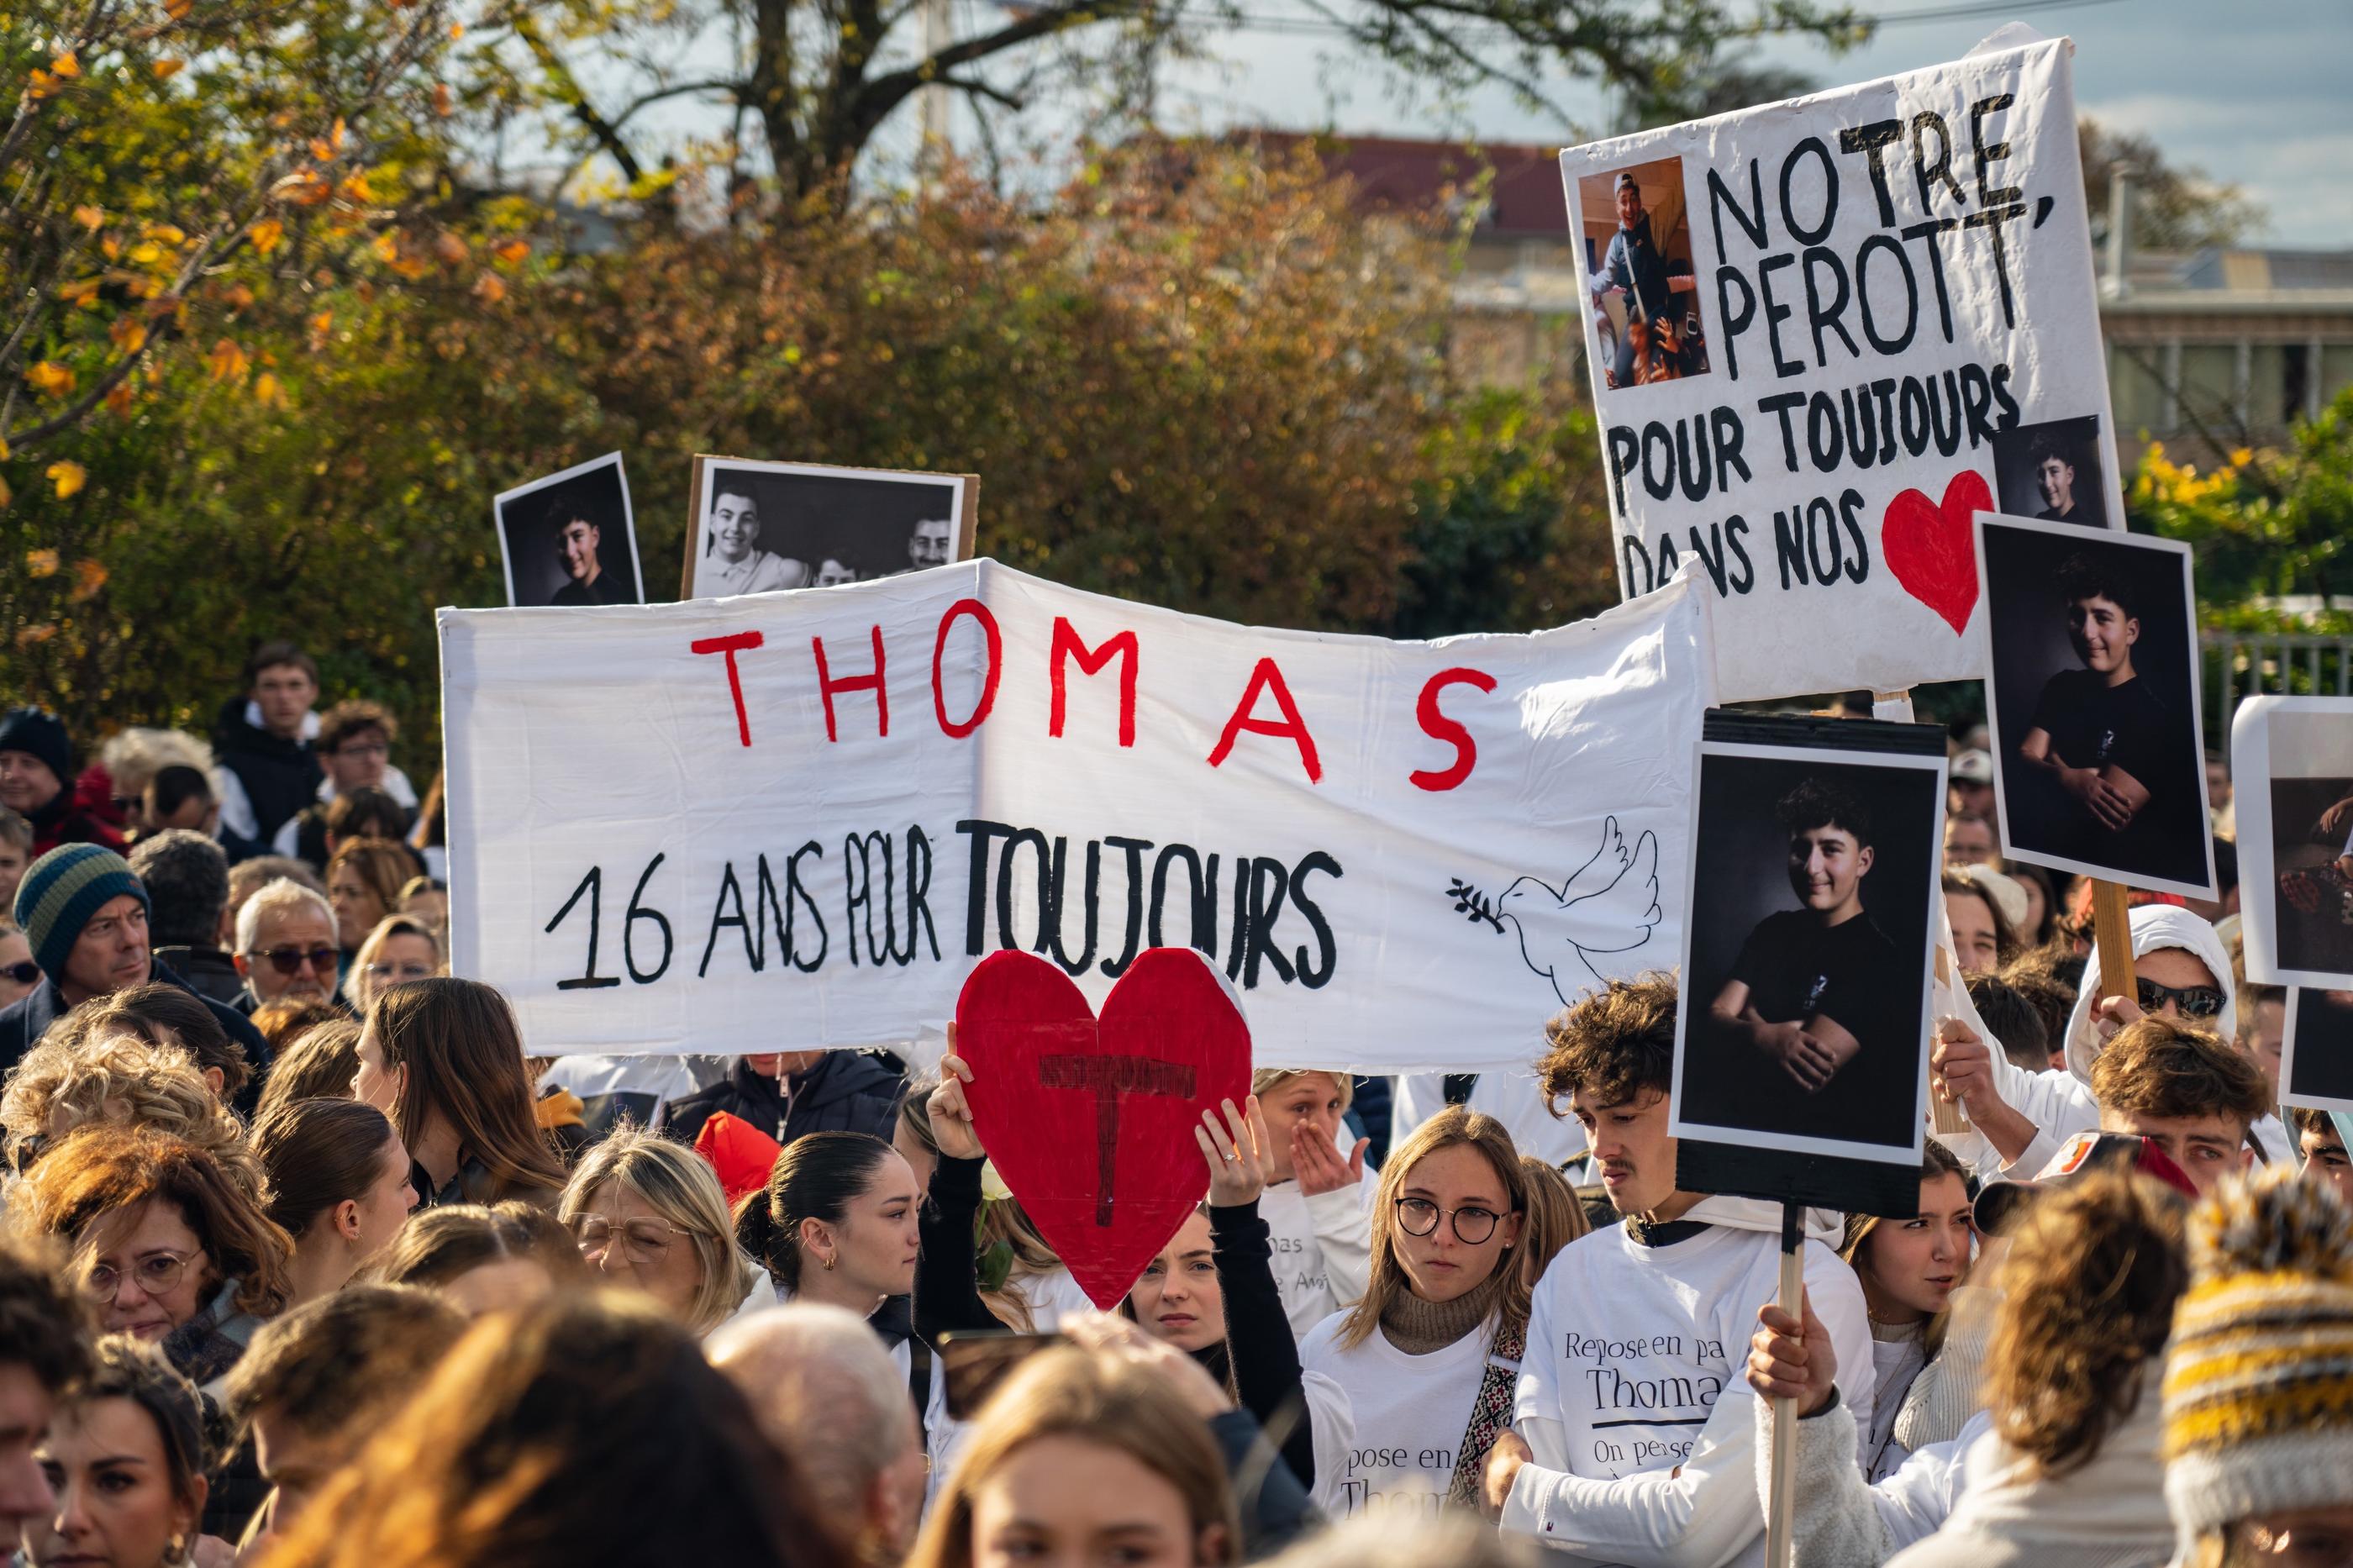 Près de 6000 personnes ont marché entre le lycée de Thomas et le stade de son club de rugby, ce mercredi 22 novembre, à Romans-sur-Isère (Drôme). LP/Thomas Pueyo